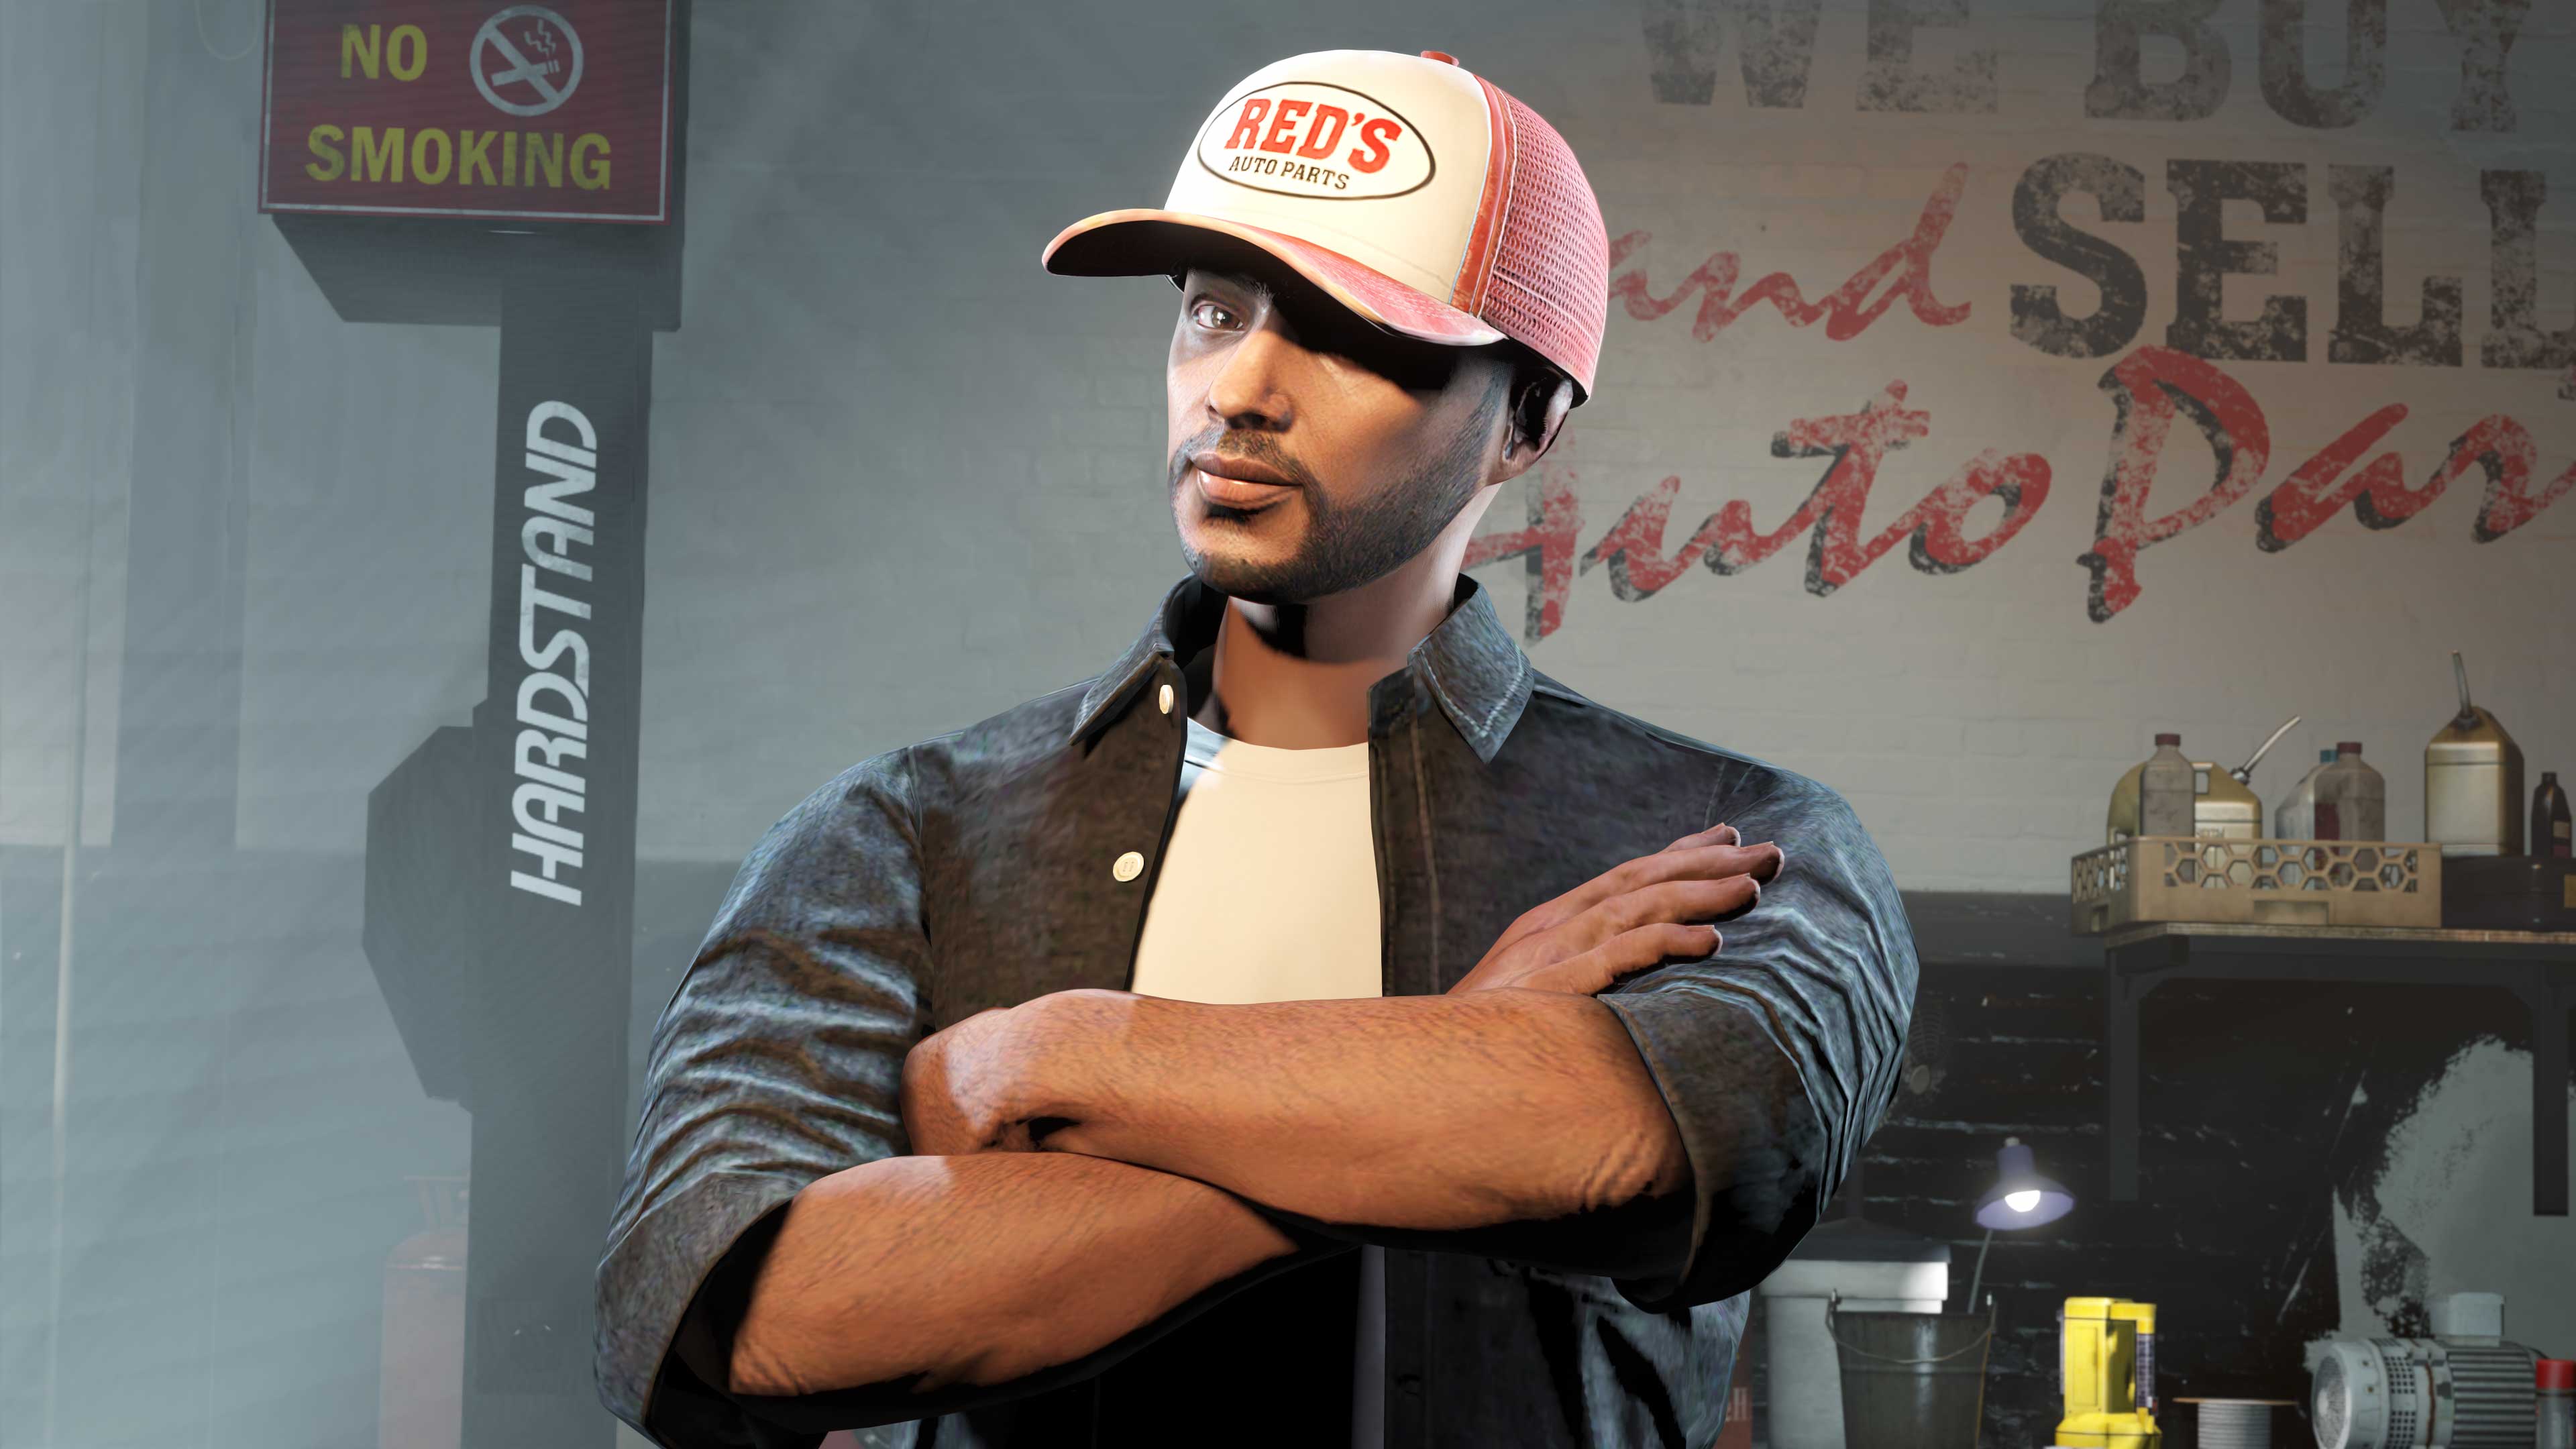 Personagem do GTA Online usando o Boné Red's vermelho e branco com o logotipo do Red’s Auto Parts.